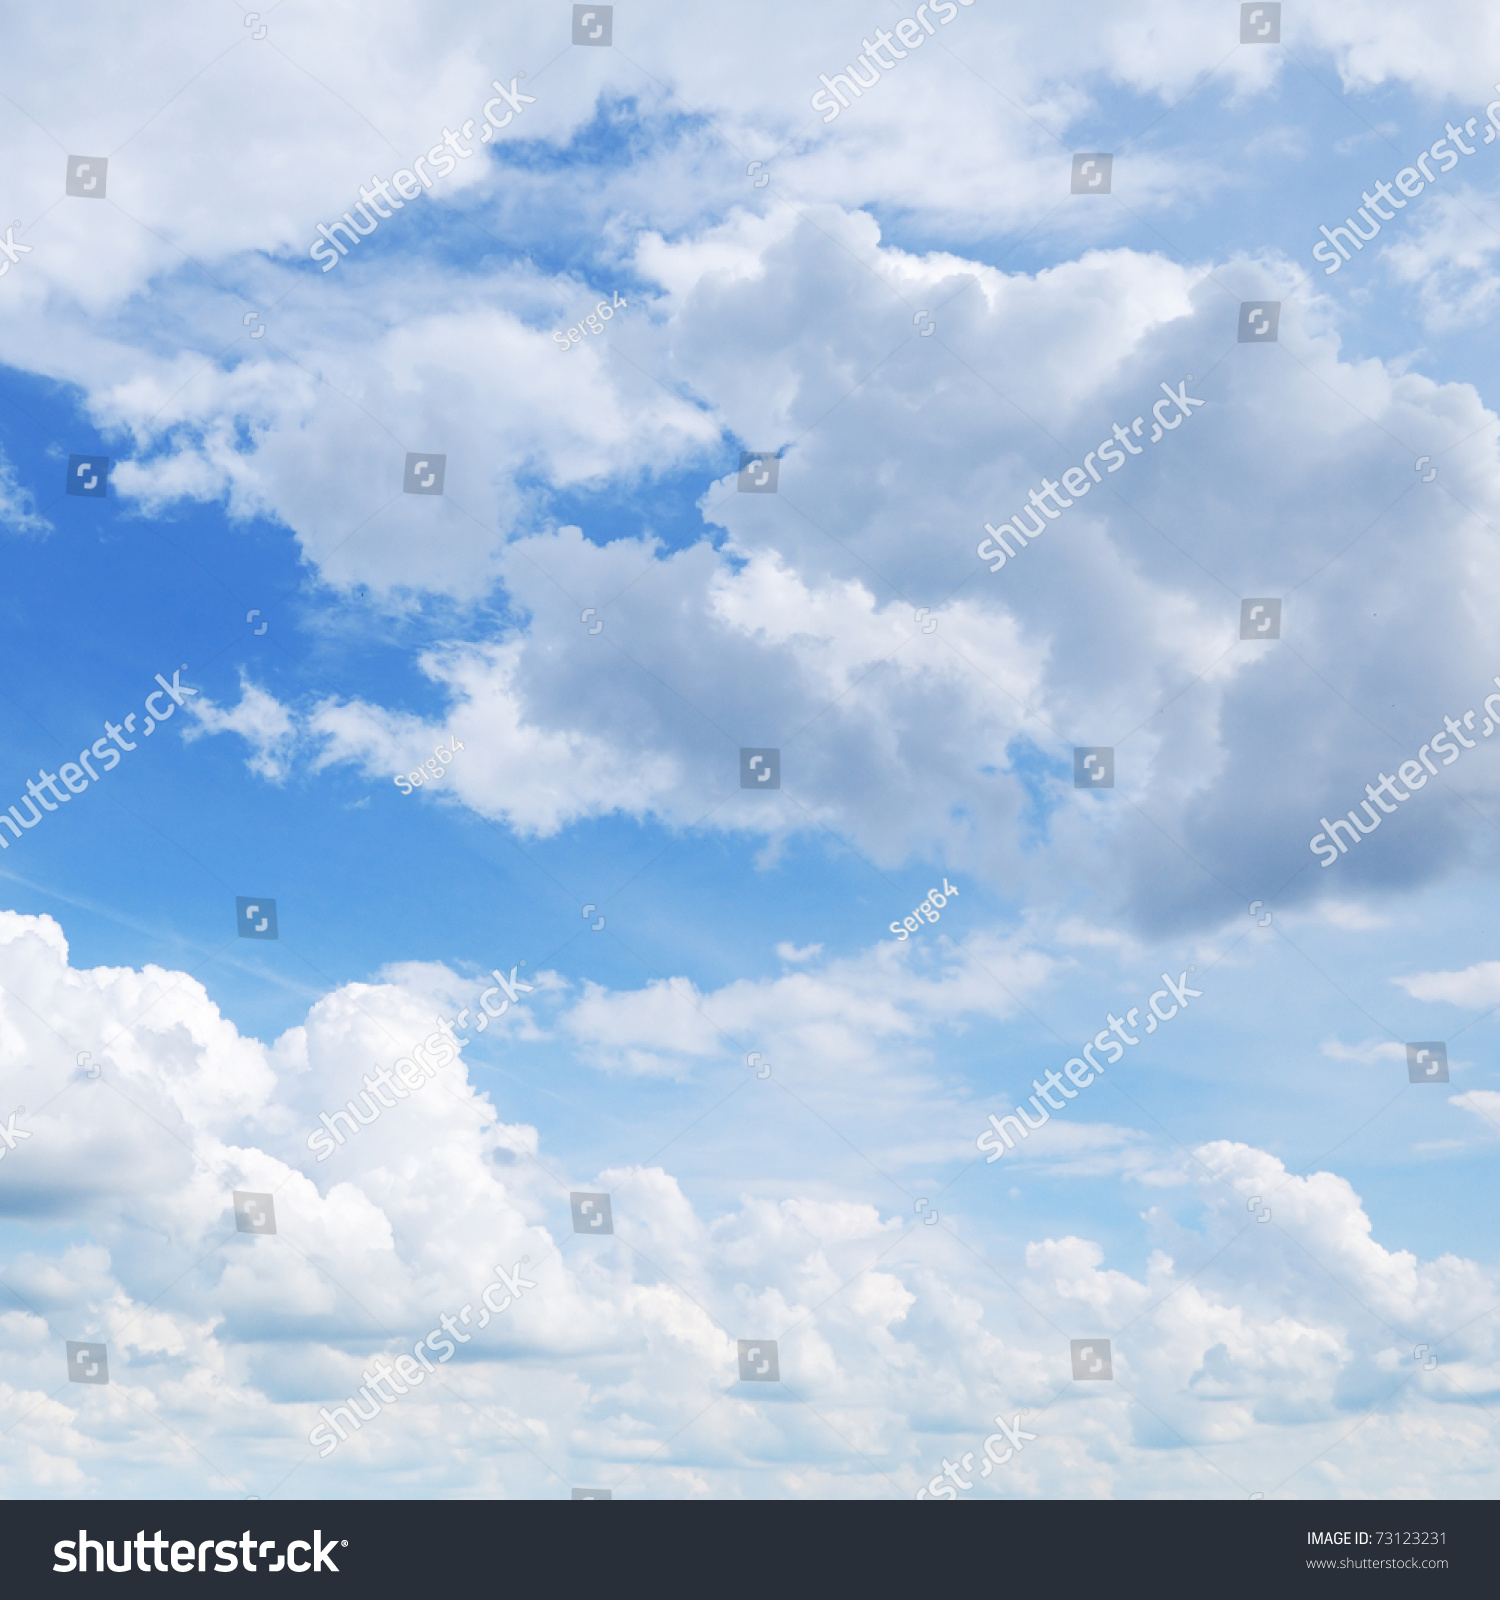 Cloud In Blue Sky Stock Photo 73123231 : Shutterstock